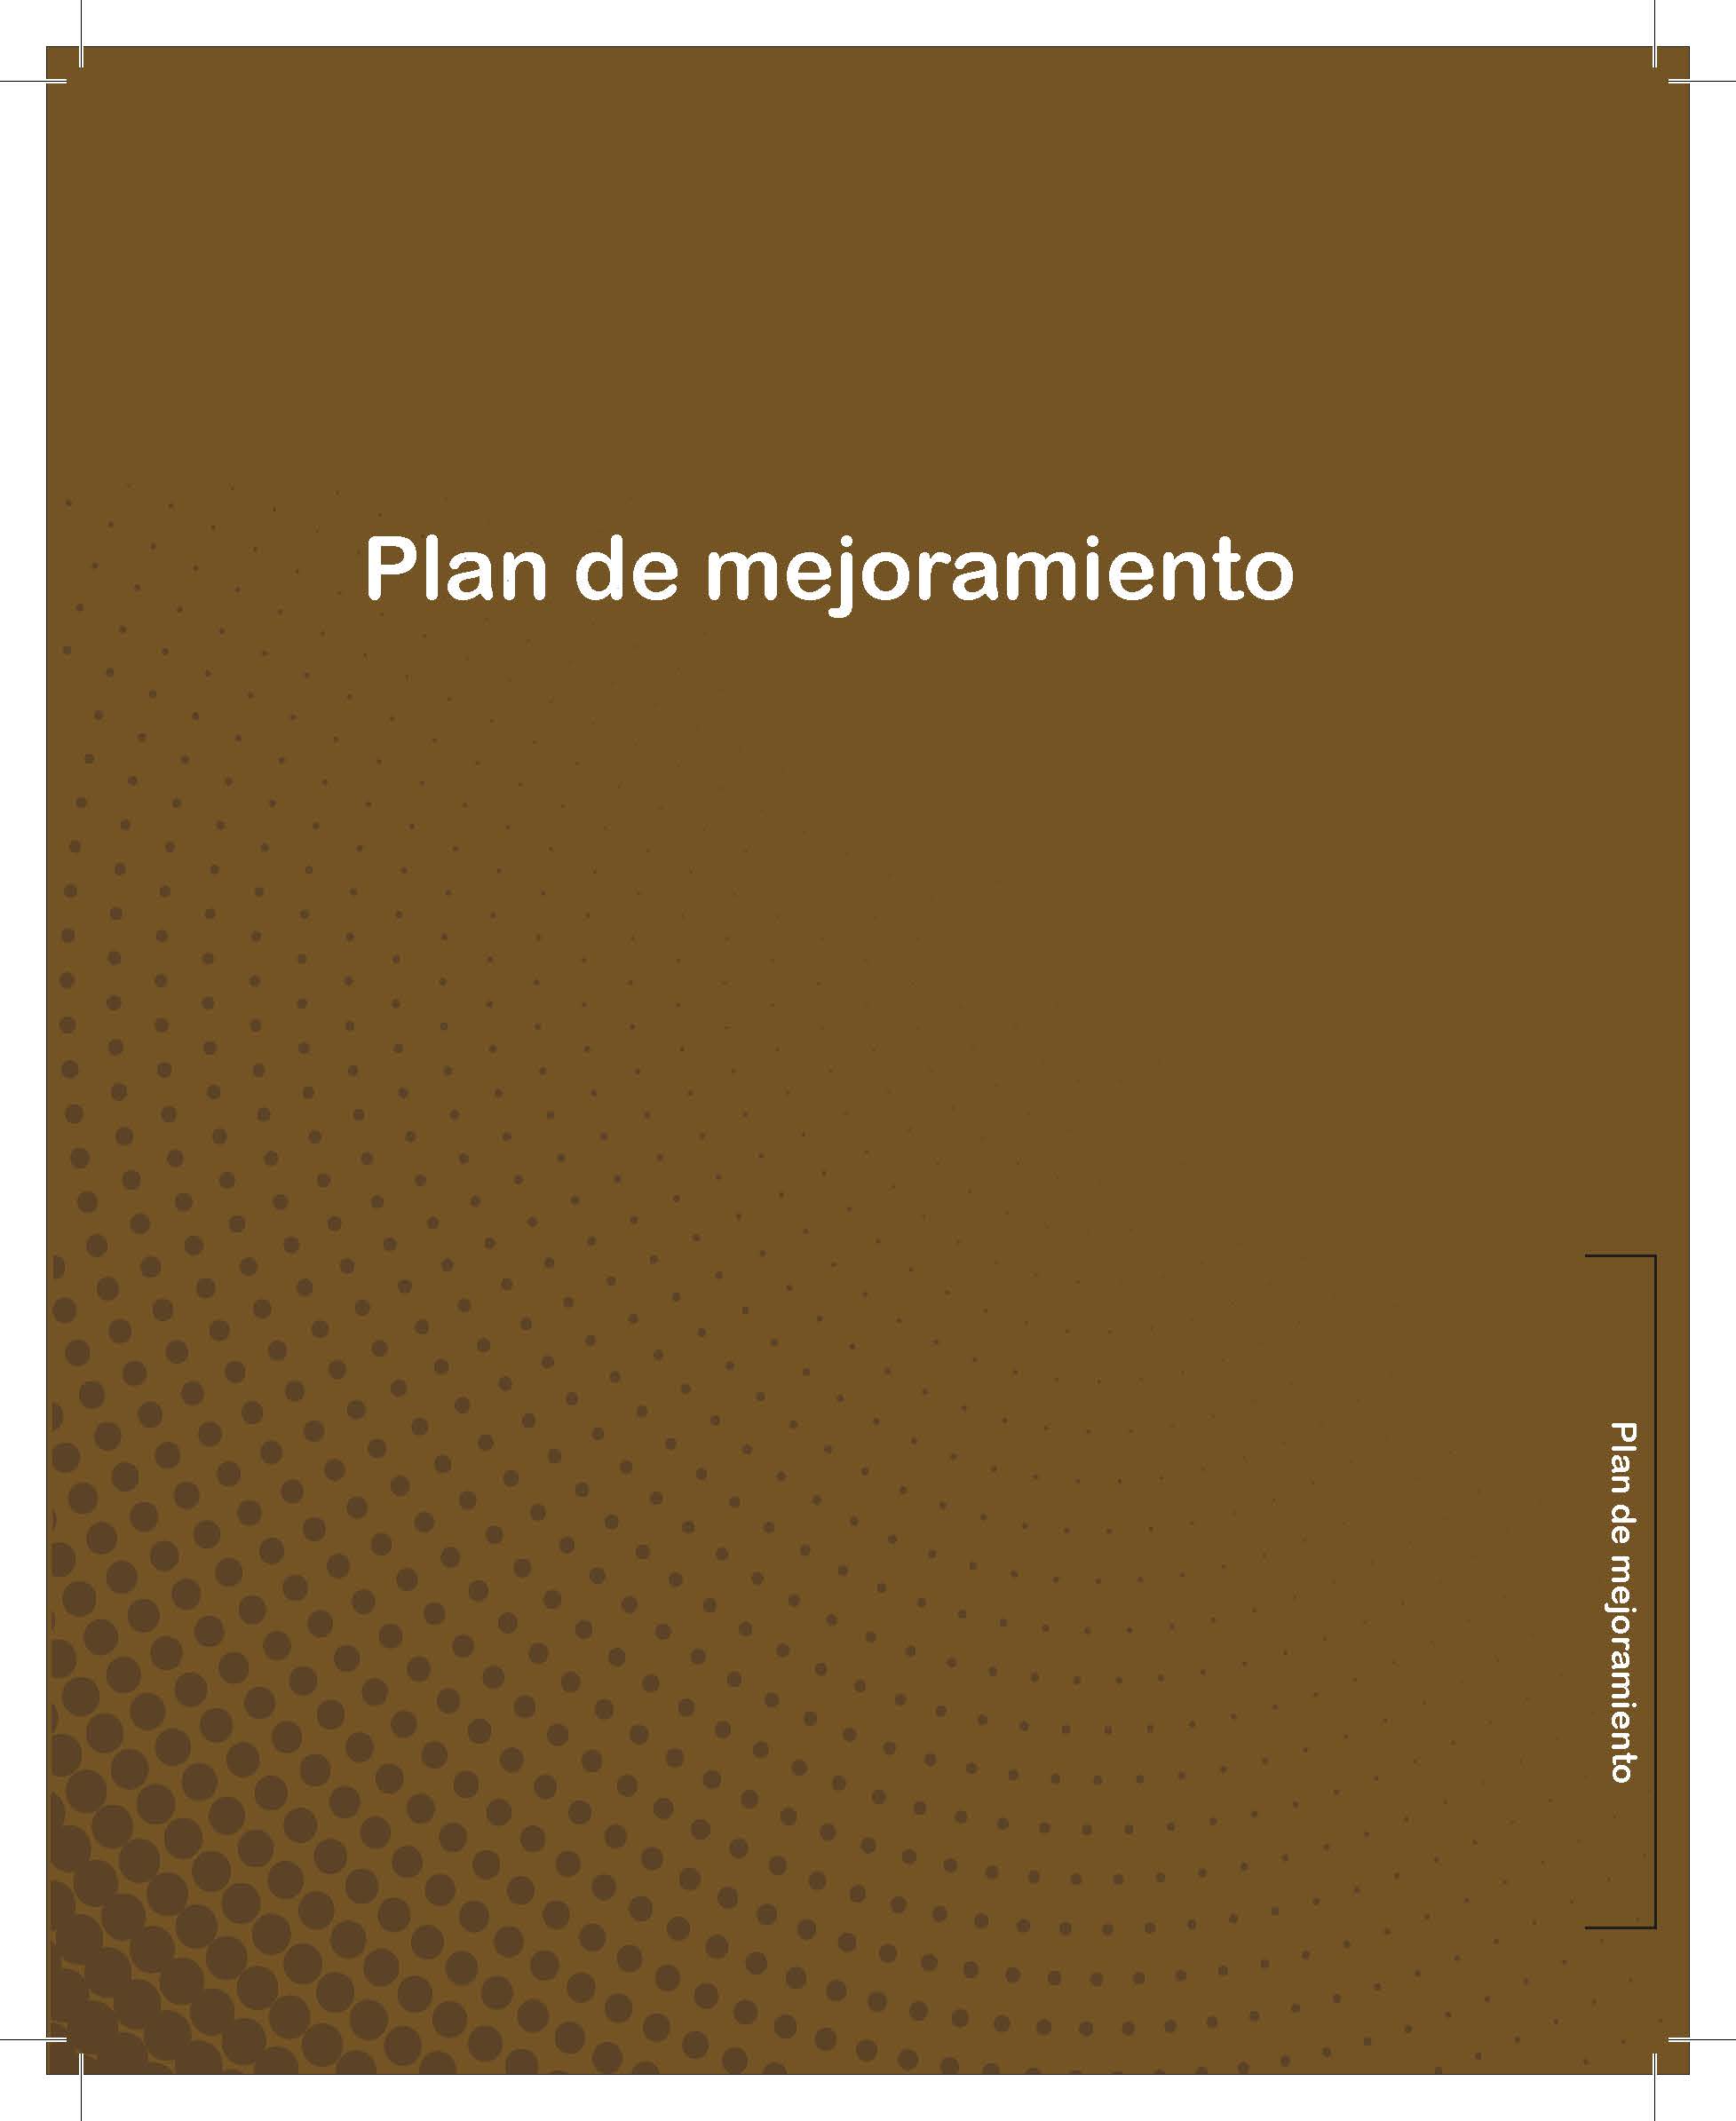 Imagen portada del documento de la Guía del Plan de Mejoramiento